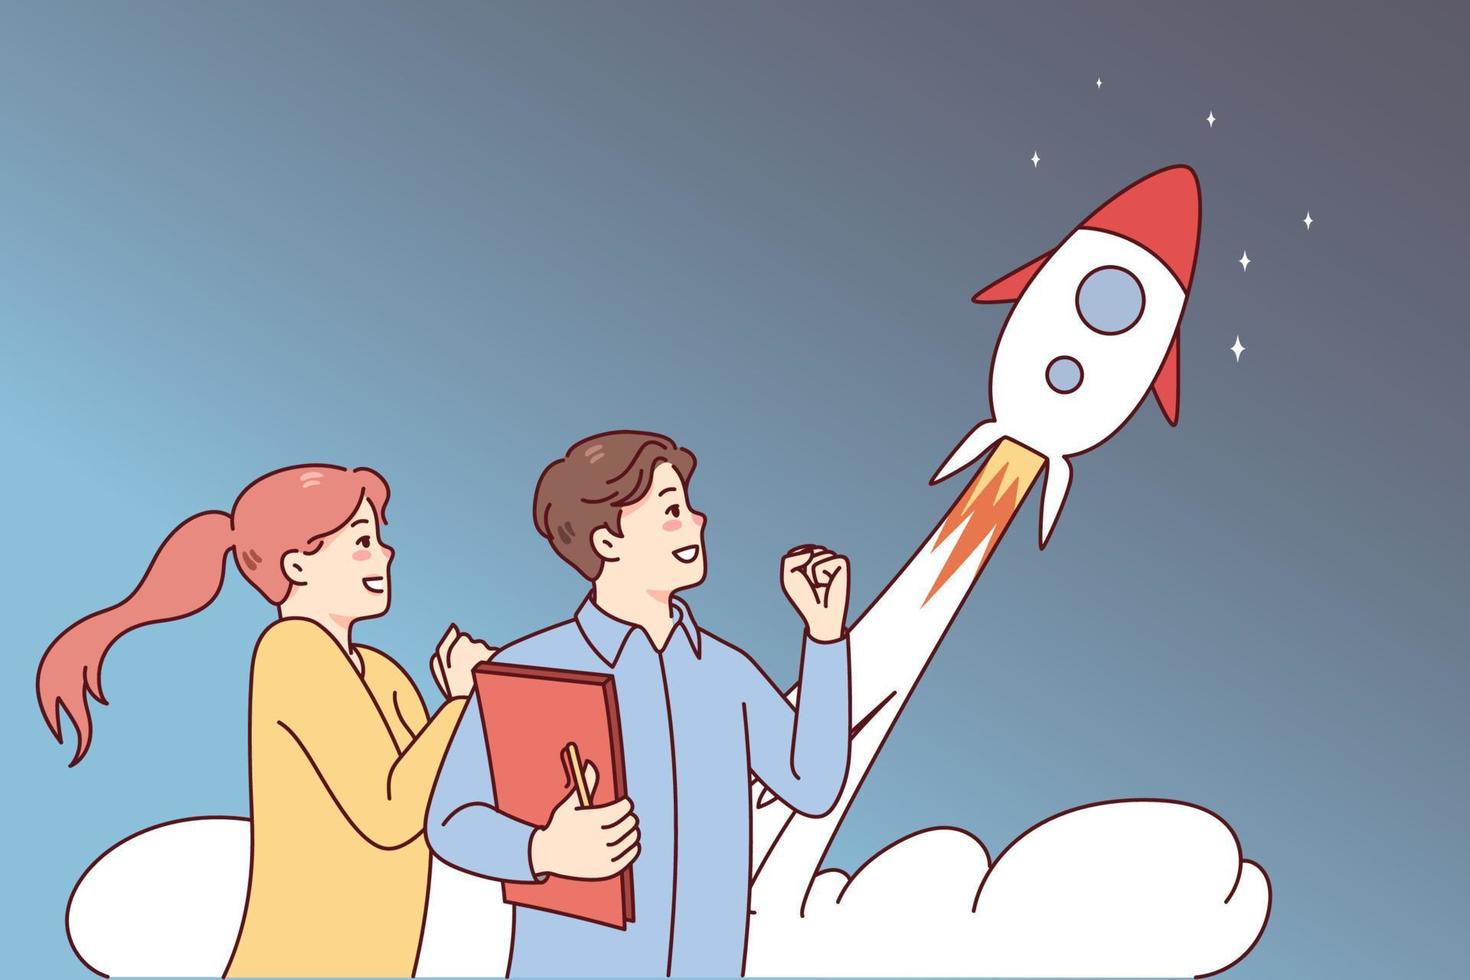 människor upphetsad handla om raket flygande i himmel. affärsmän fira delad företag börja lansera. innovation och projekt Start. vektor illustration.